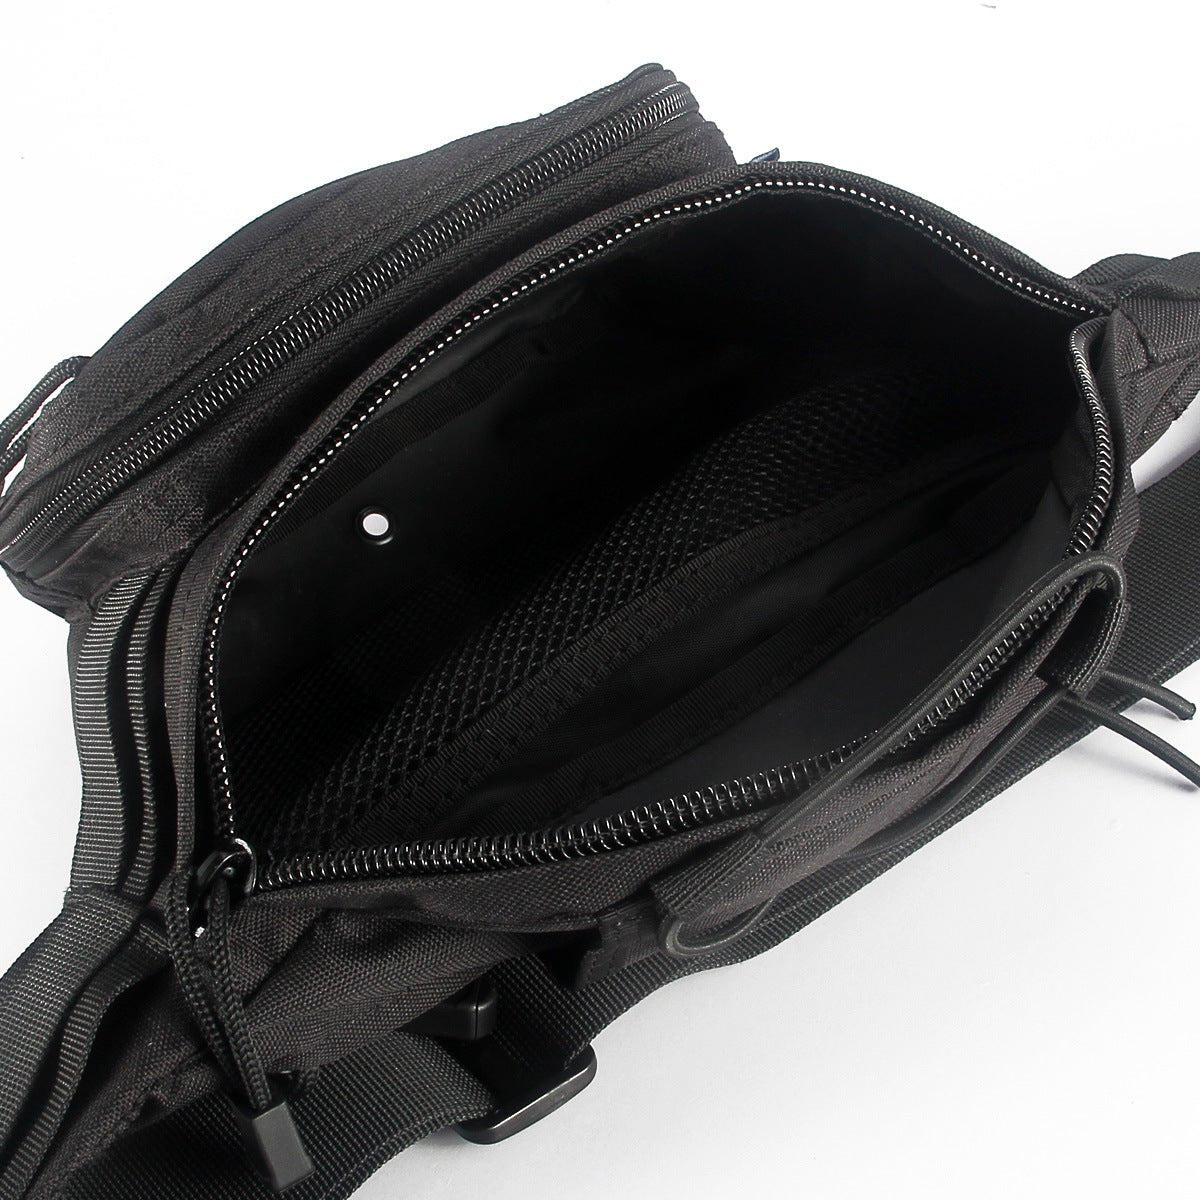 Waterproof & Wear-resistant - Waist Bag